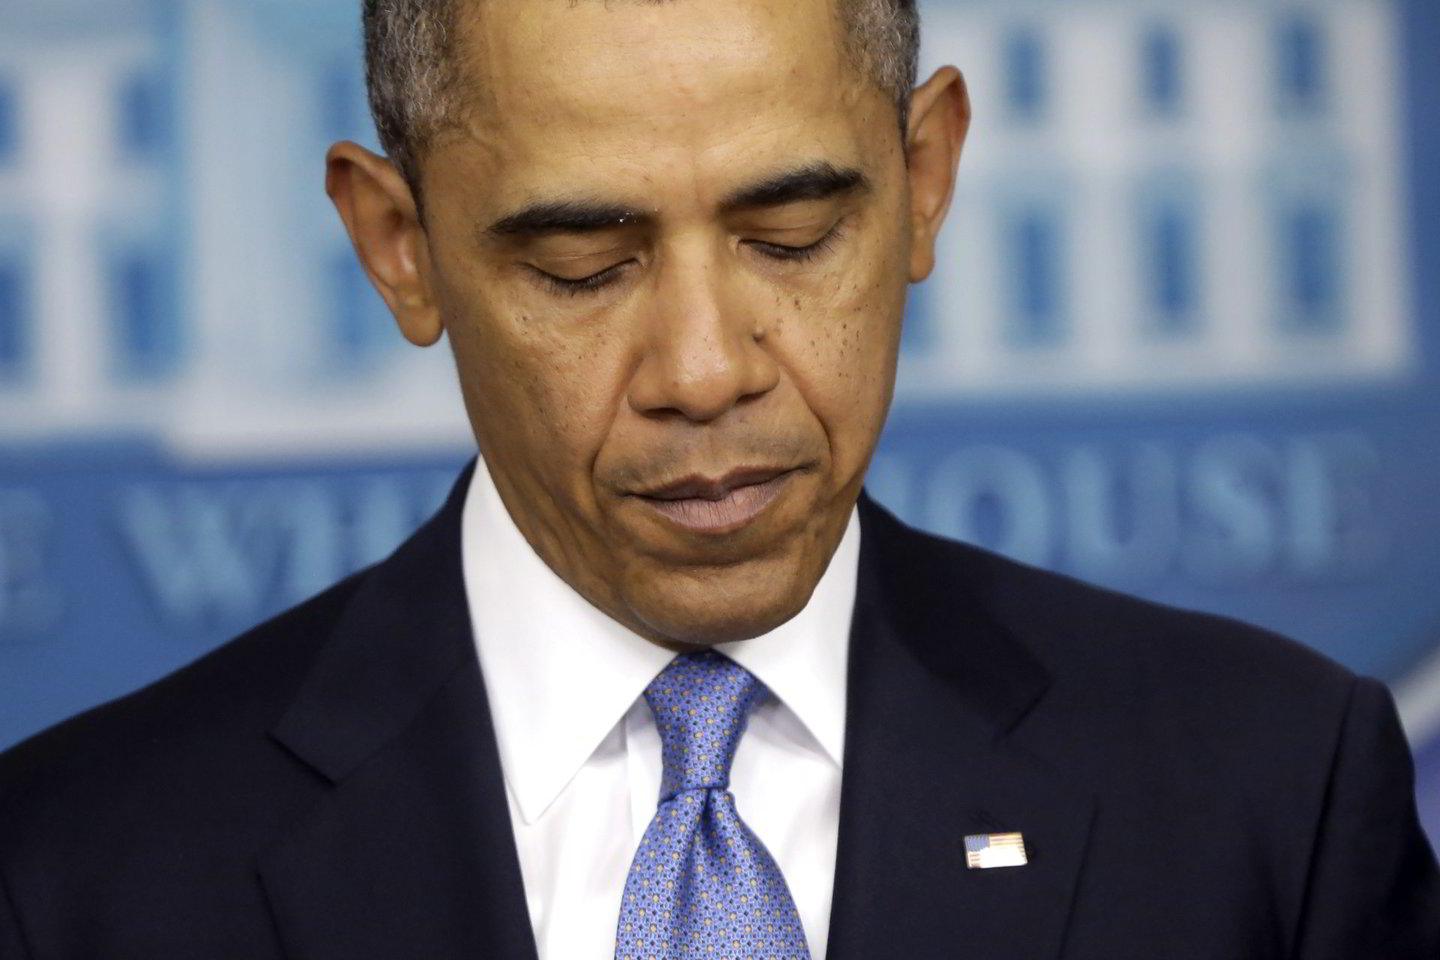 B.Obamos administracijapažadėjo naujas sankcijas, tačiau nepasakė, kas yra ruošiama<br>AP nuotr.